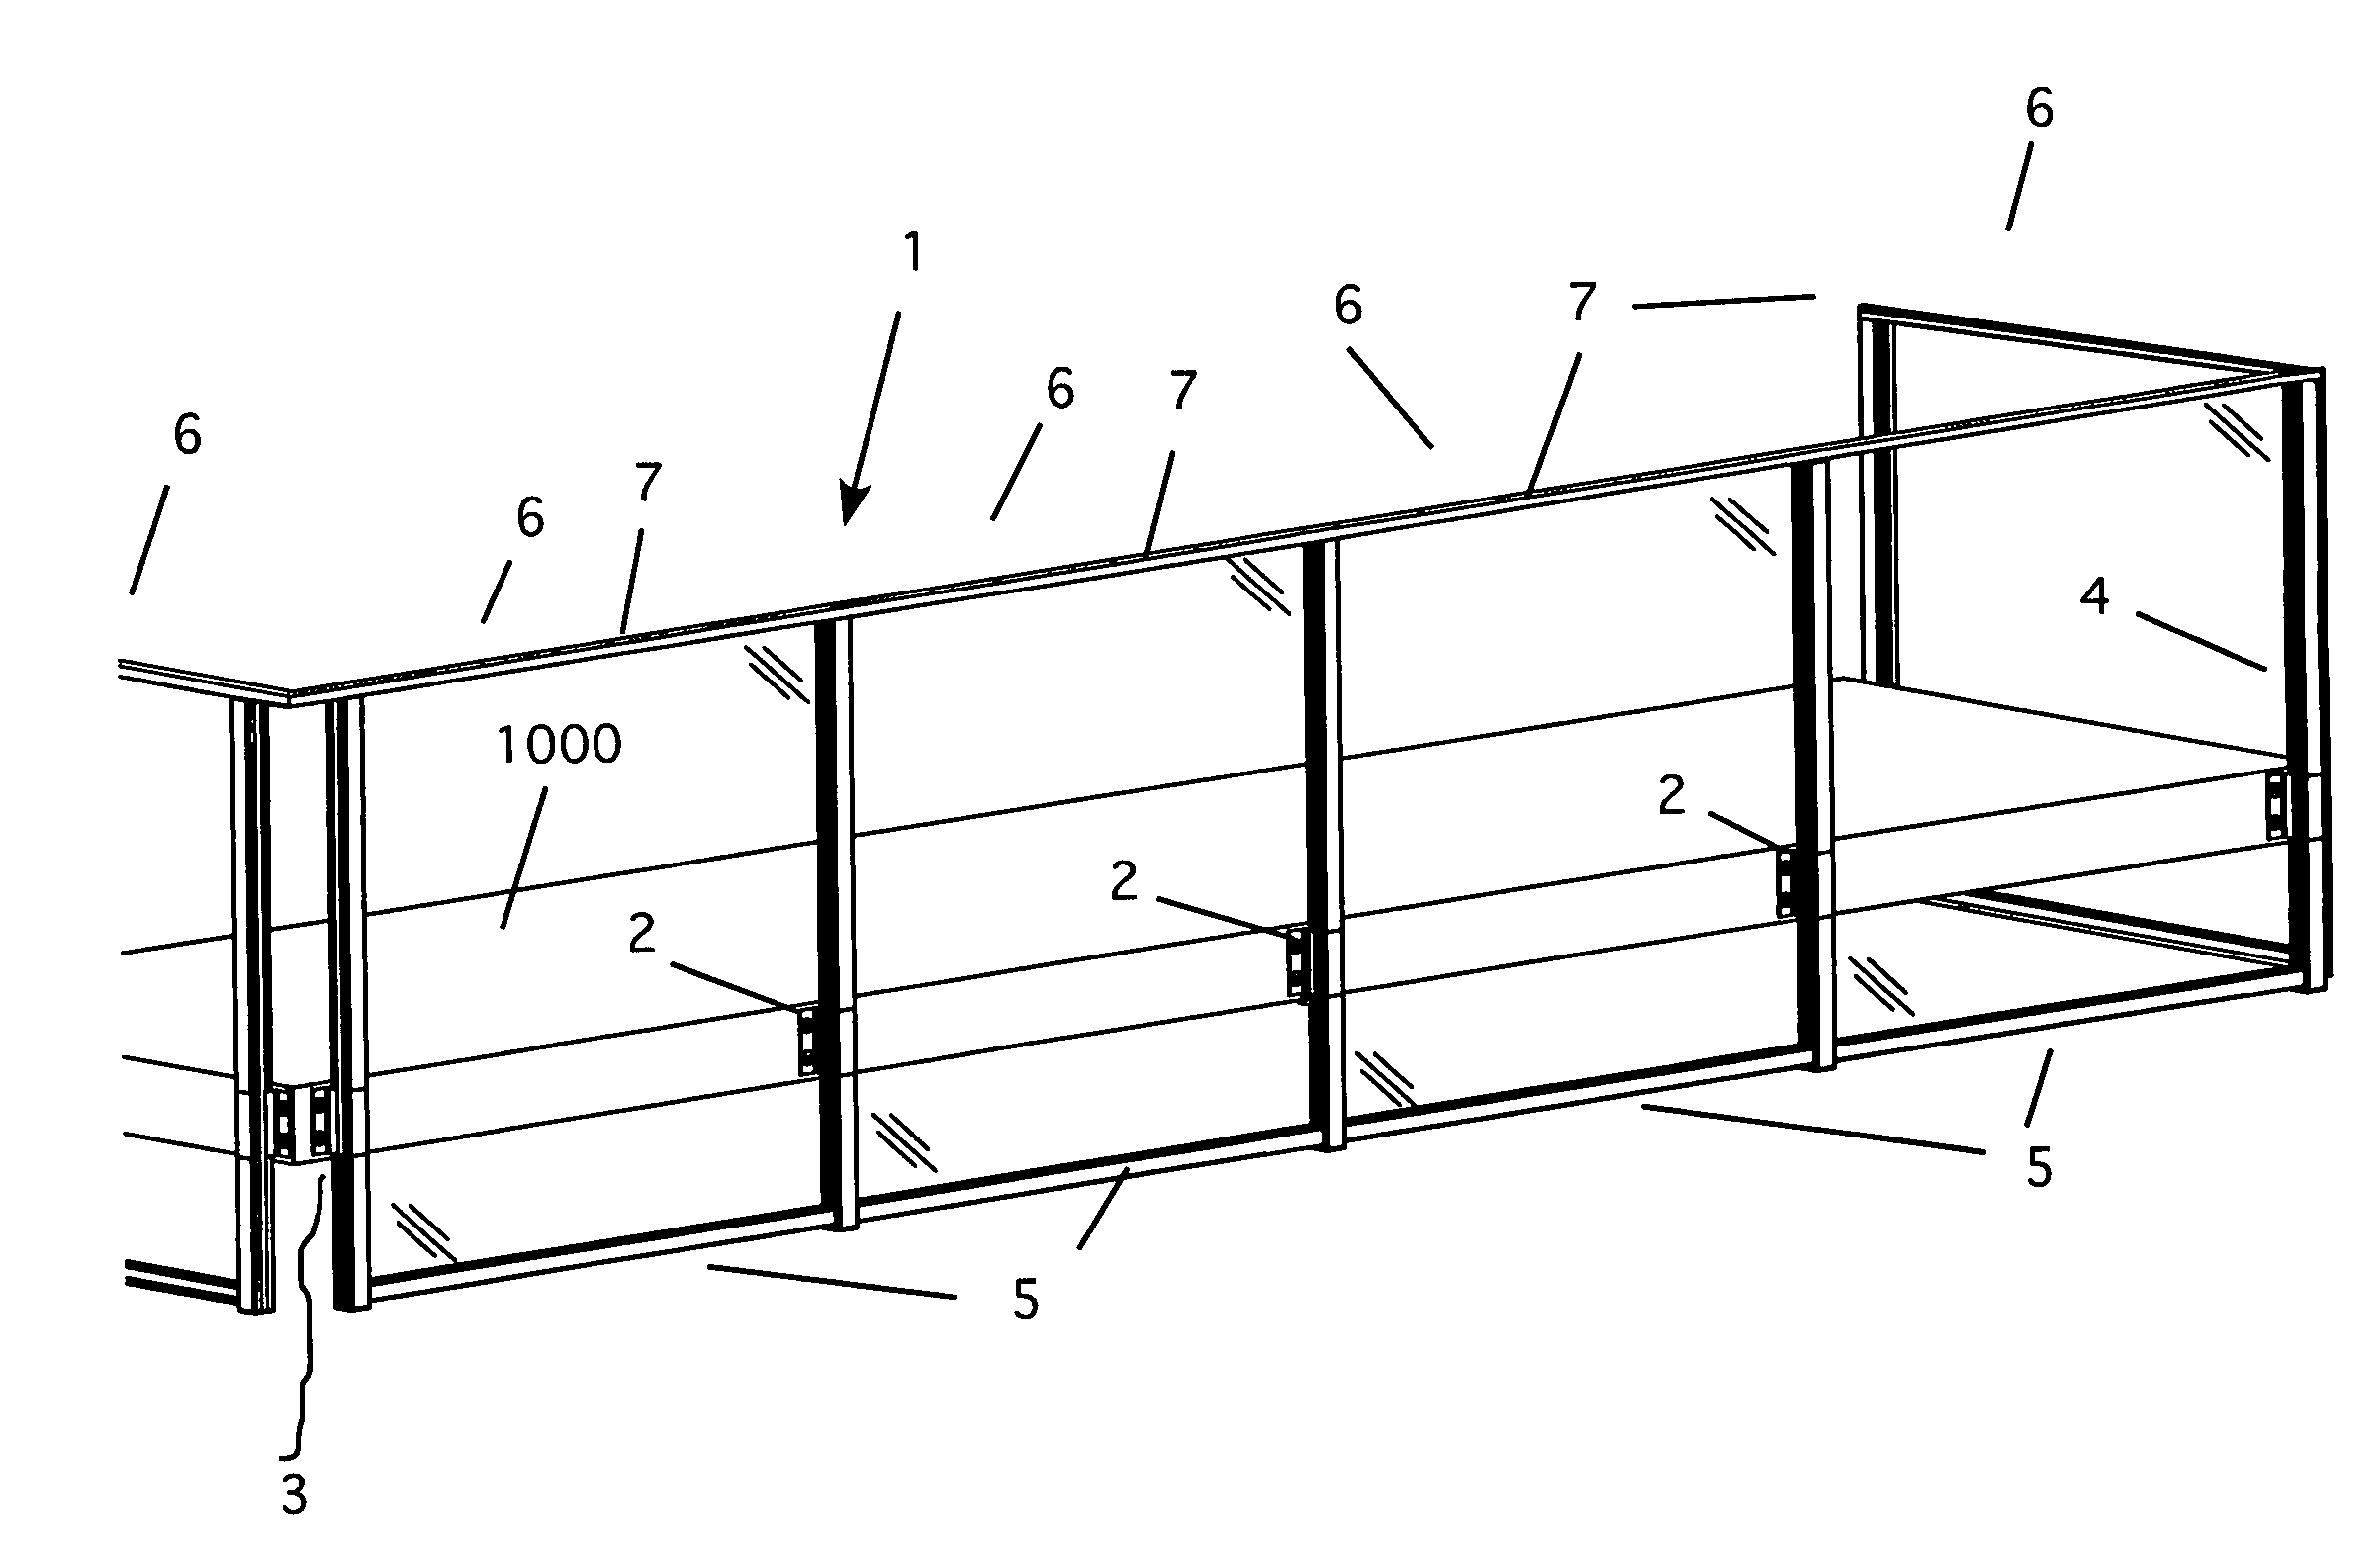 Fascia-mounted aluminum railing system